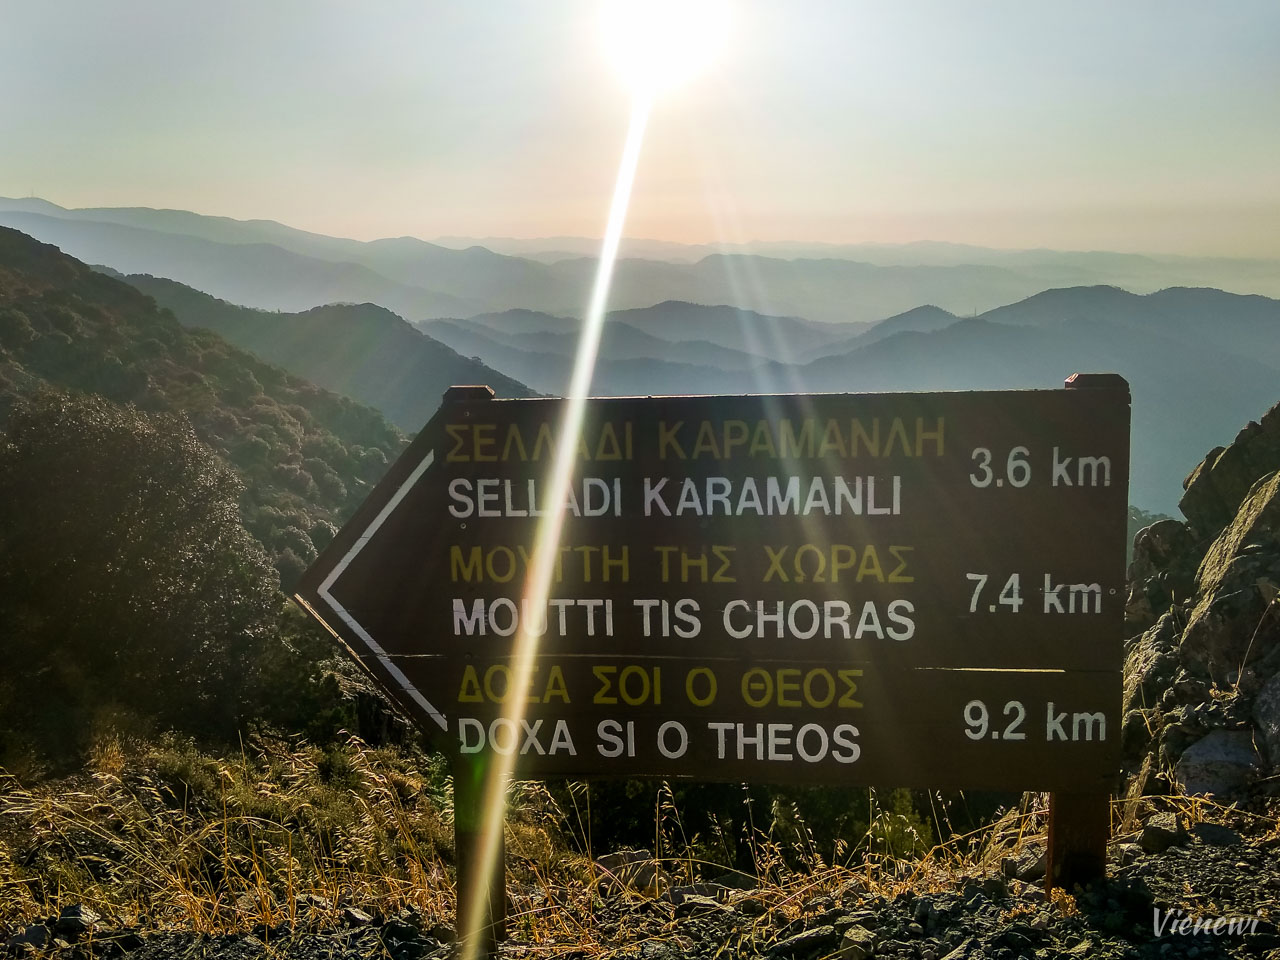 Drogowskaz pokazujący kierunek do punktów początkowych szlaków pieszych - "Selladi Karamanli", "Mutti tis choras", i "Doxa si o theos".